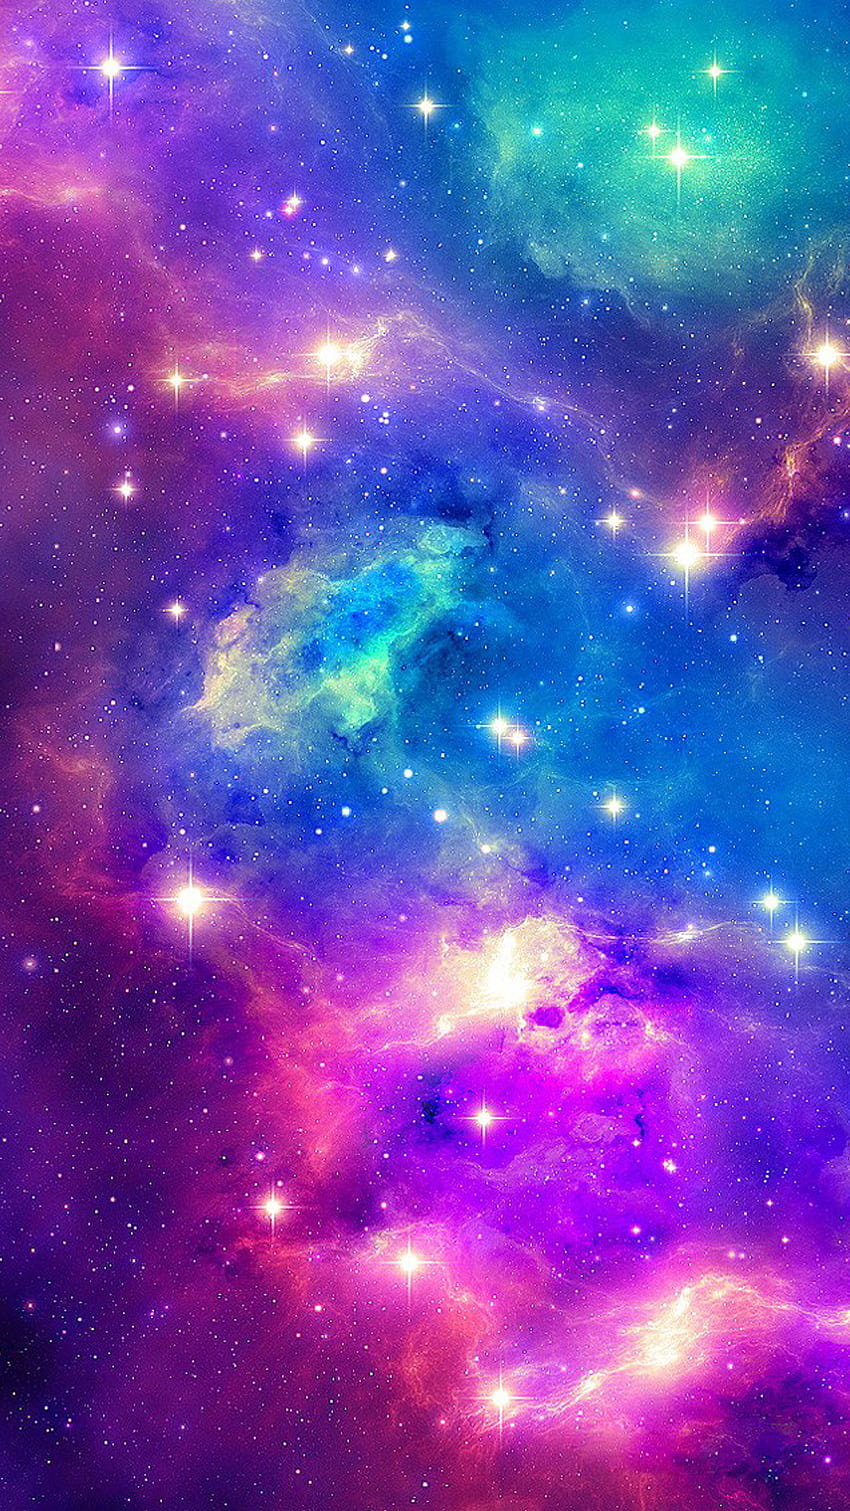 Cùng đắm chìm vào hình nền độc đáo với Galaxy Background, đầy sắc màu và sự tinh tế của vũ trụ. Cảm nhận sự bao la và lãng mạn bên những họa tiết nổi bật, lấy cảm hứng từ dải Ngân Hà đầy bí ẩn!